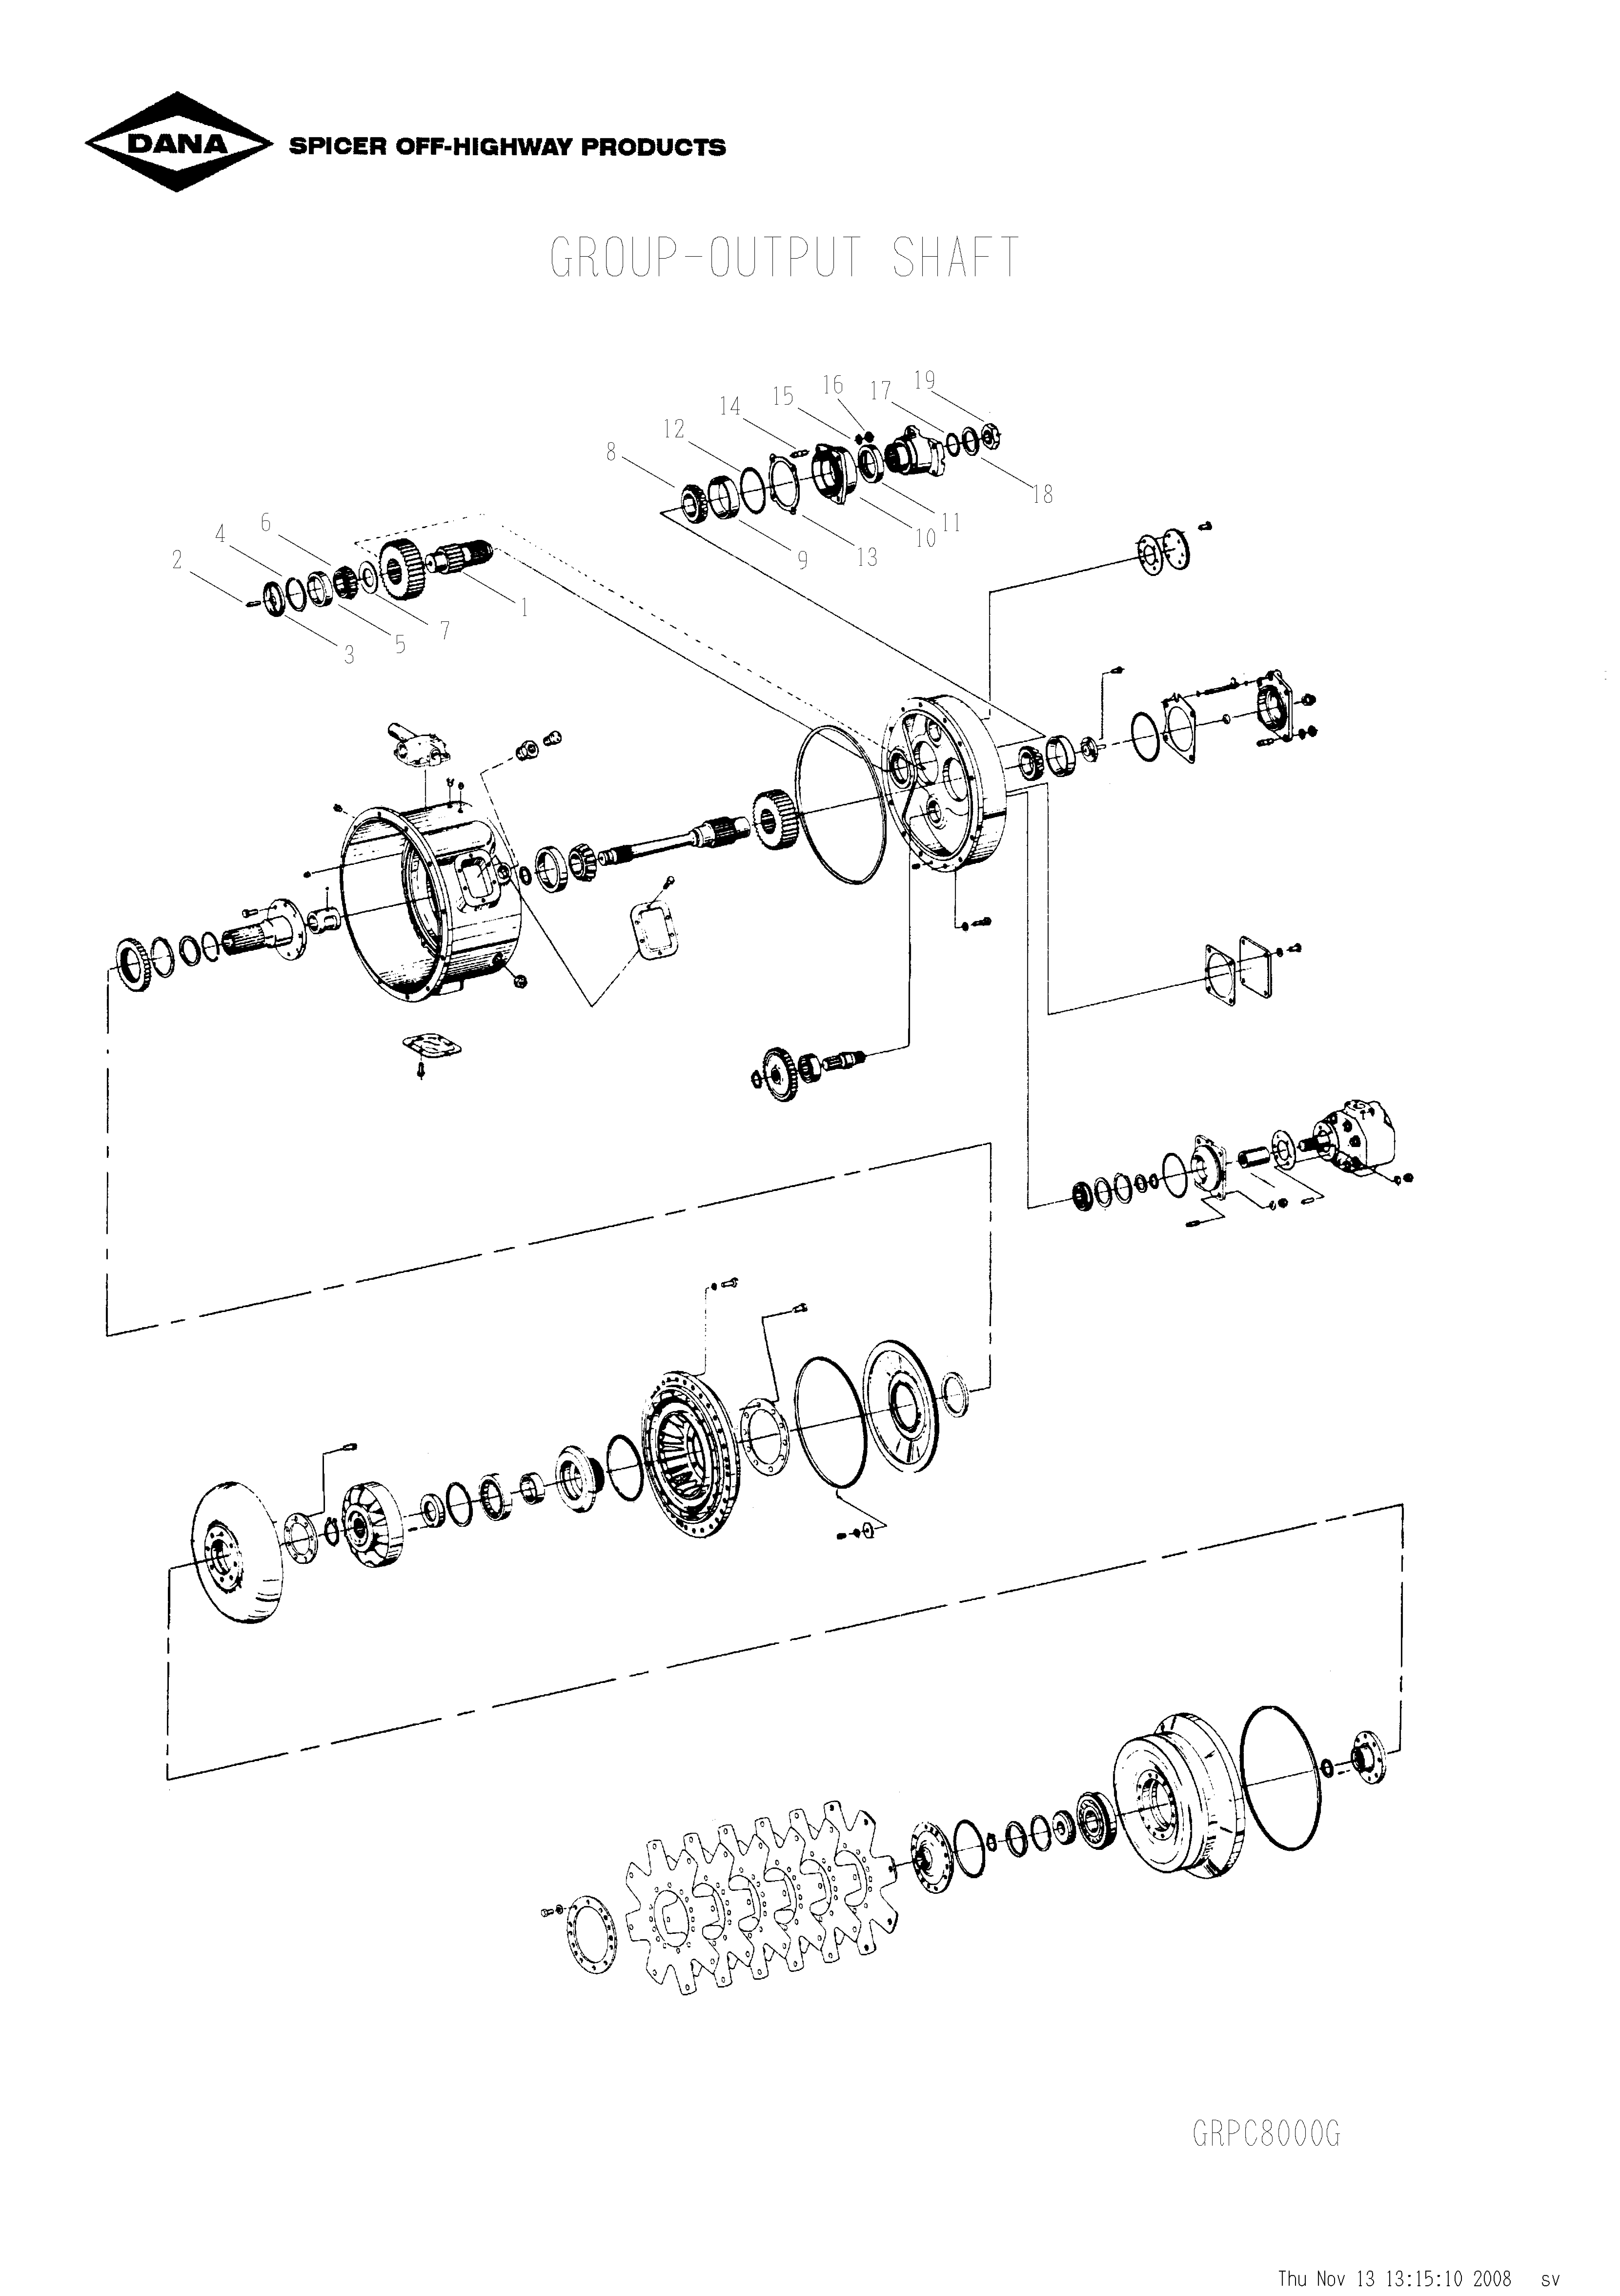 drawing for SCHOEMA, SCHOETTLER MASCHINENFABRIK K24.000087 - OIL SEAL (figure 3)